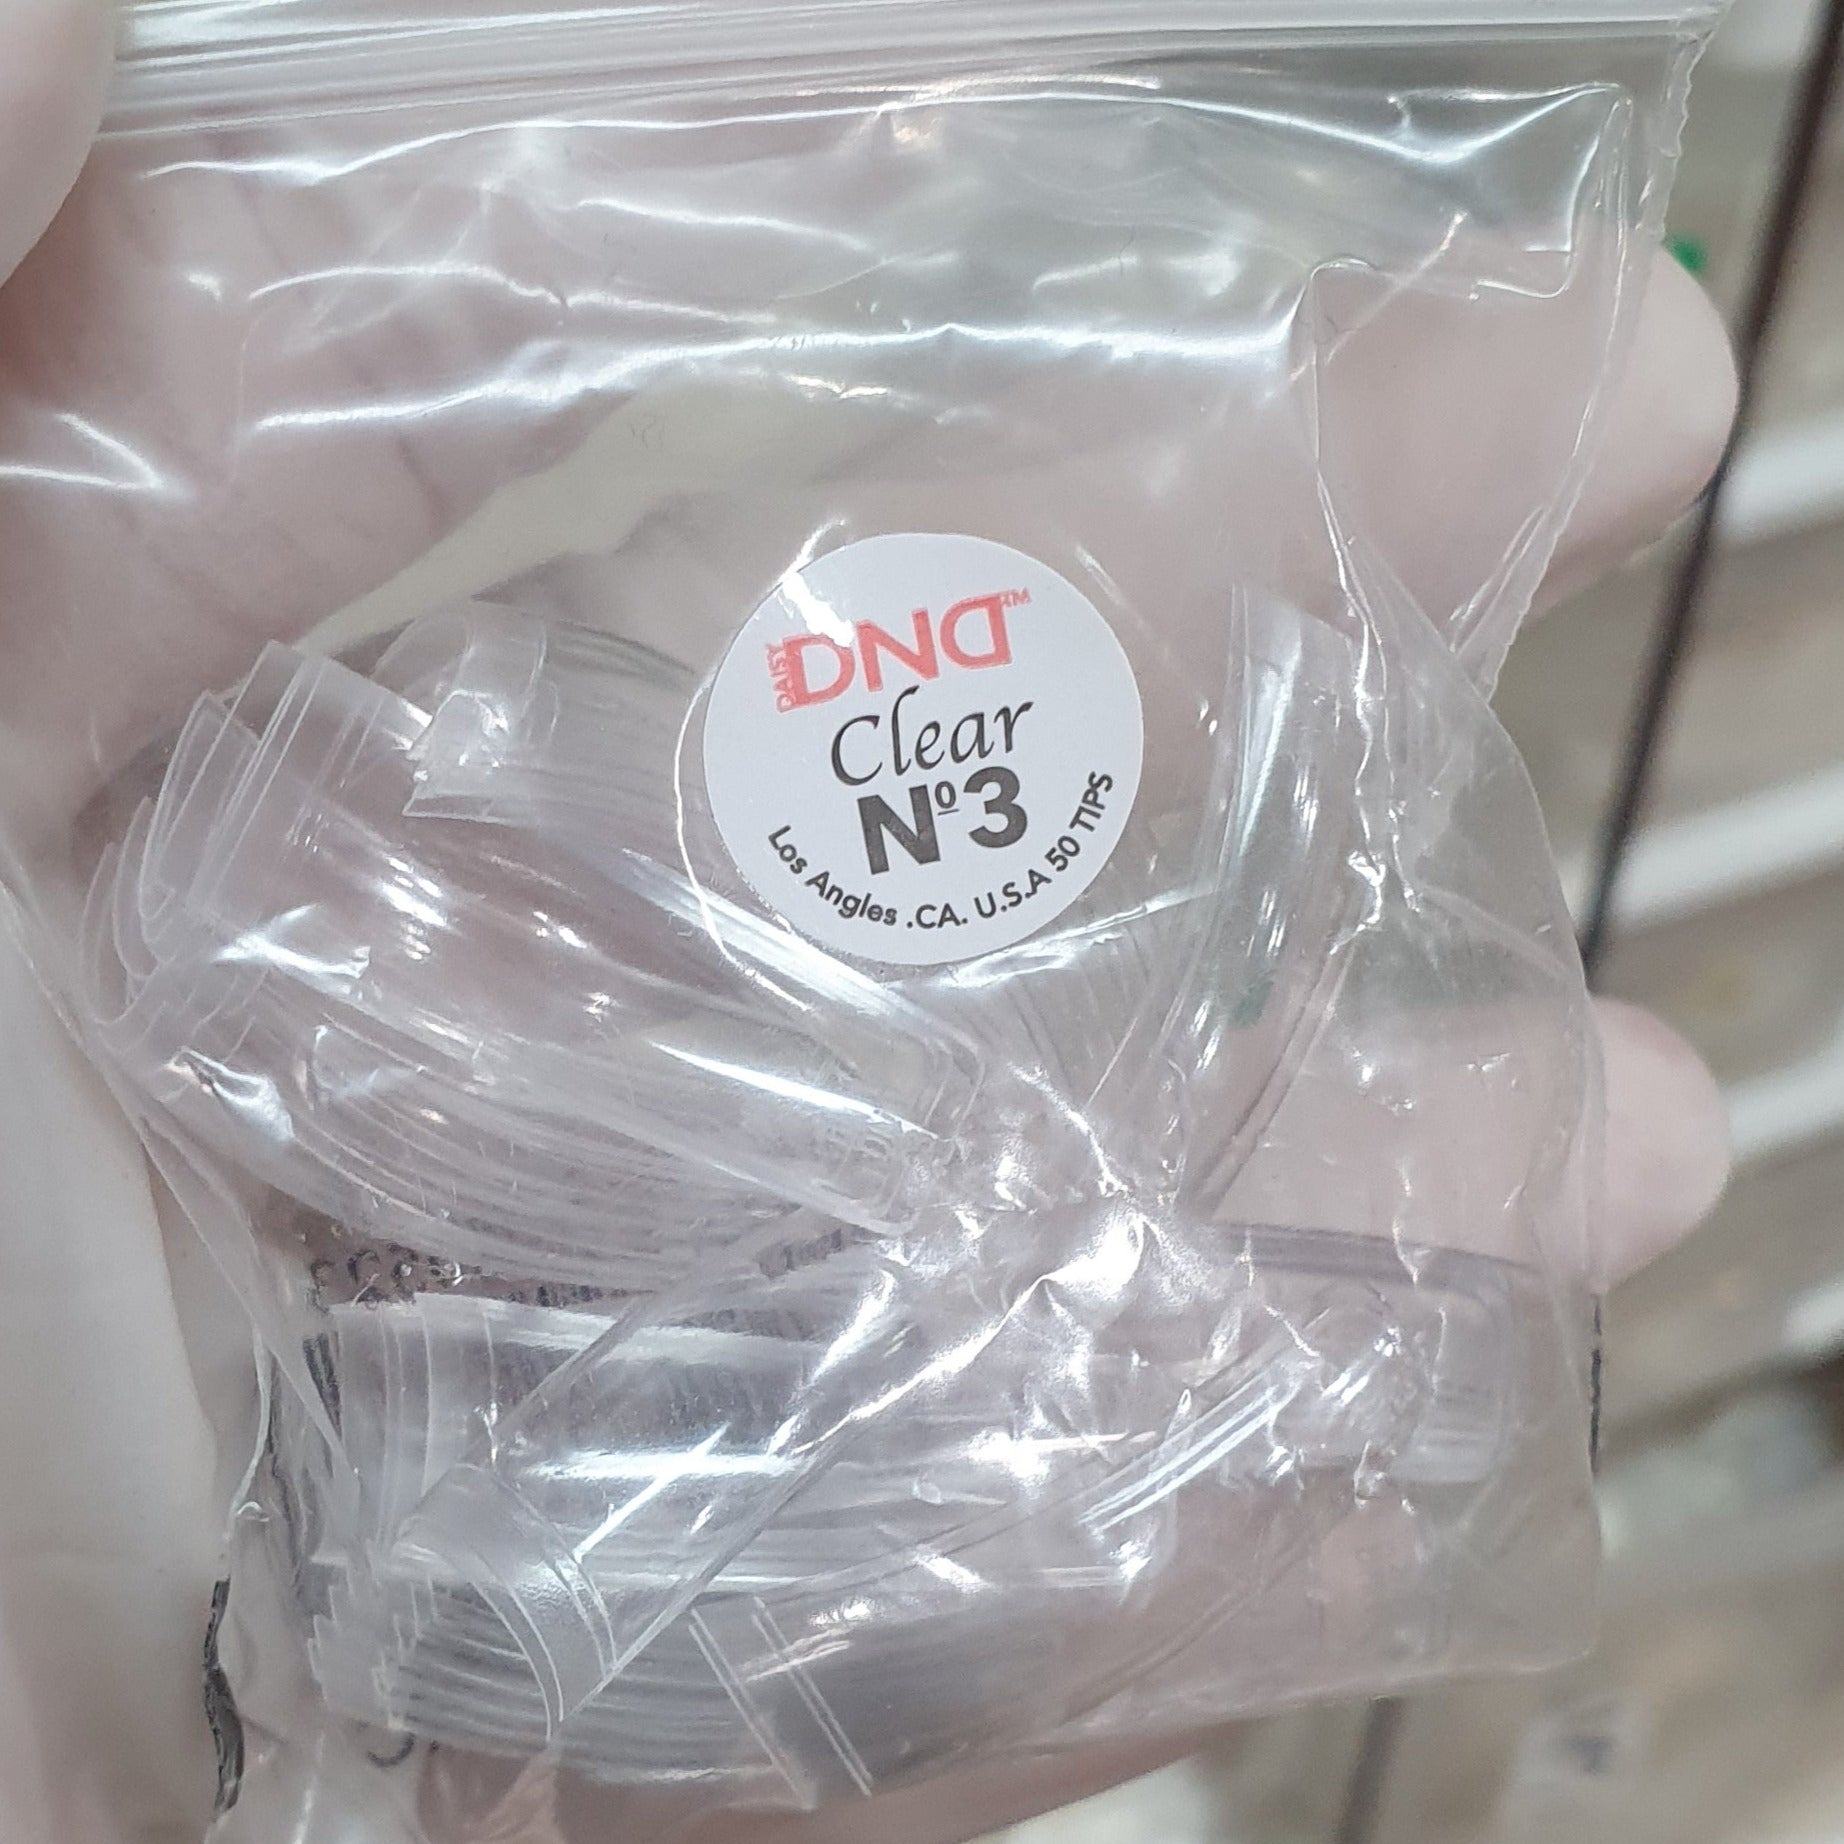 DND NAIL TIP CLEAR/NATURAL - 50/BAG